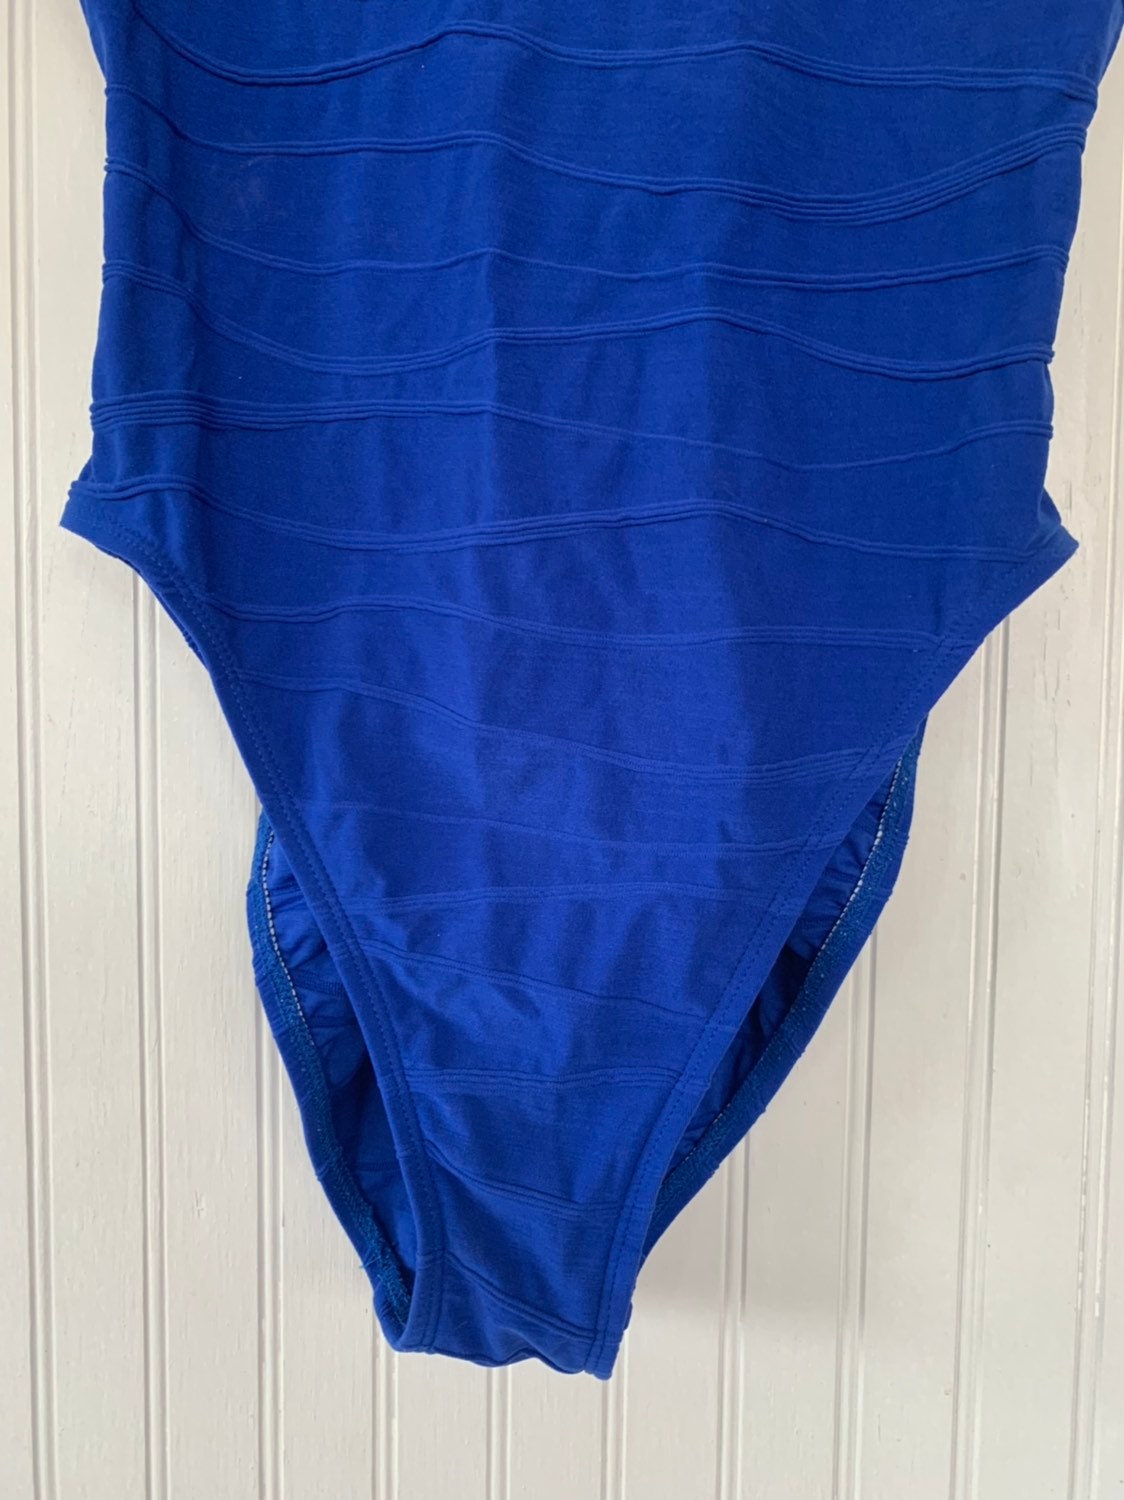 Vintage 90s Bright Royal Blue Swimsuit Swim Suit Swimwear Bodysuit